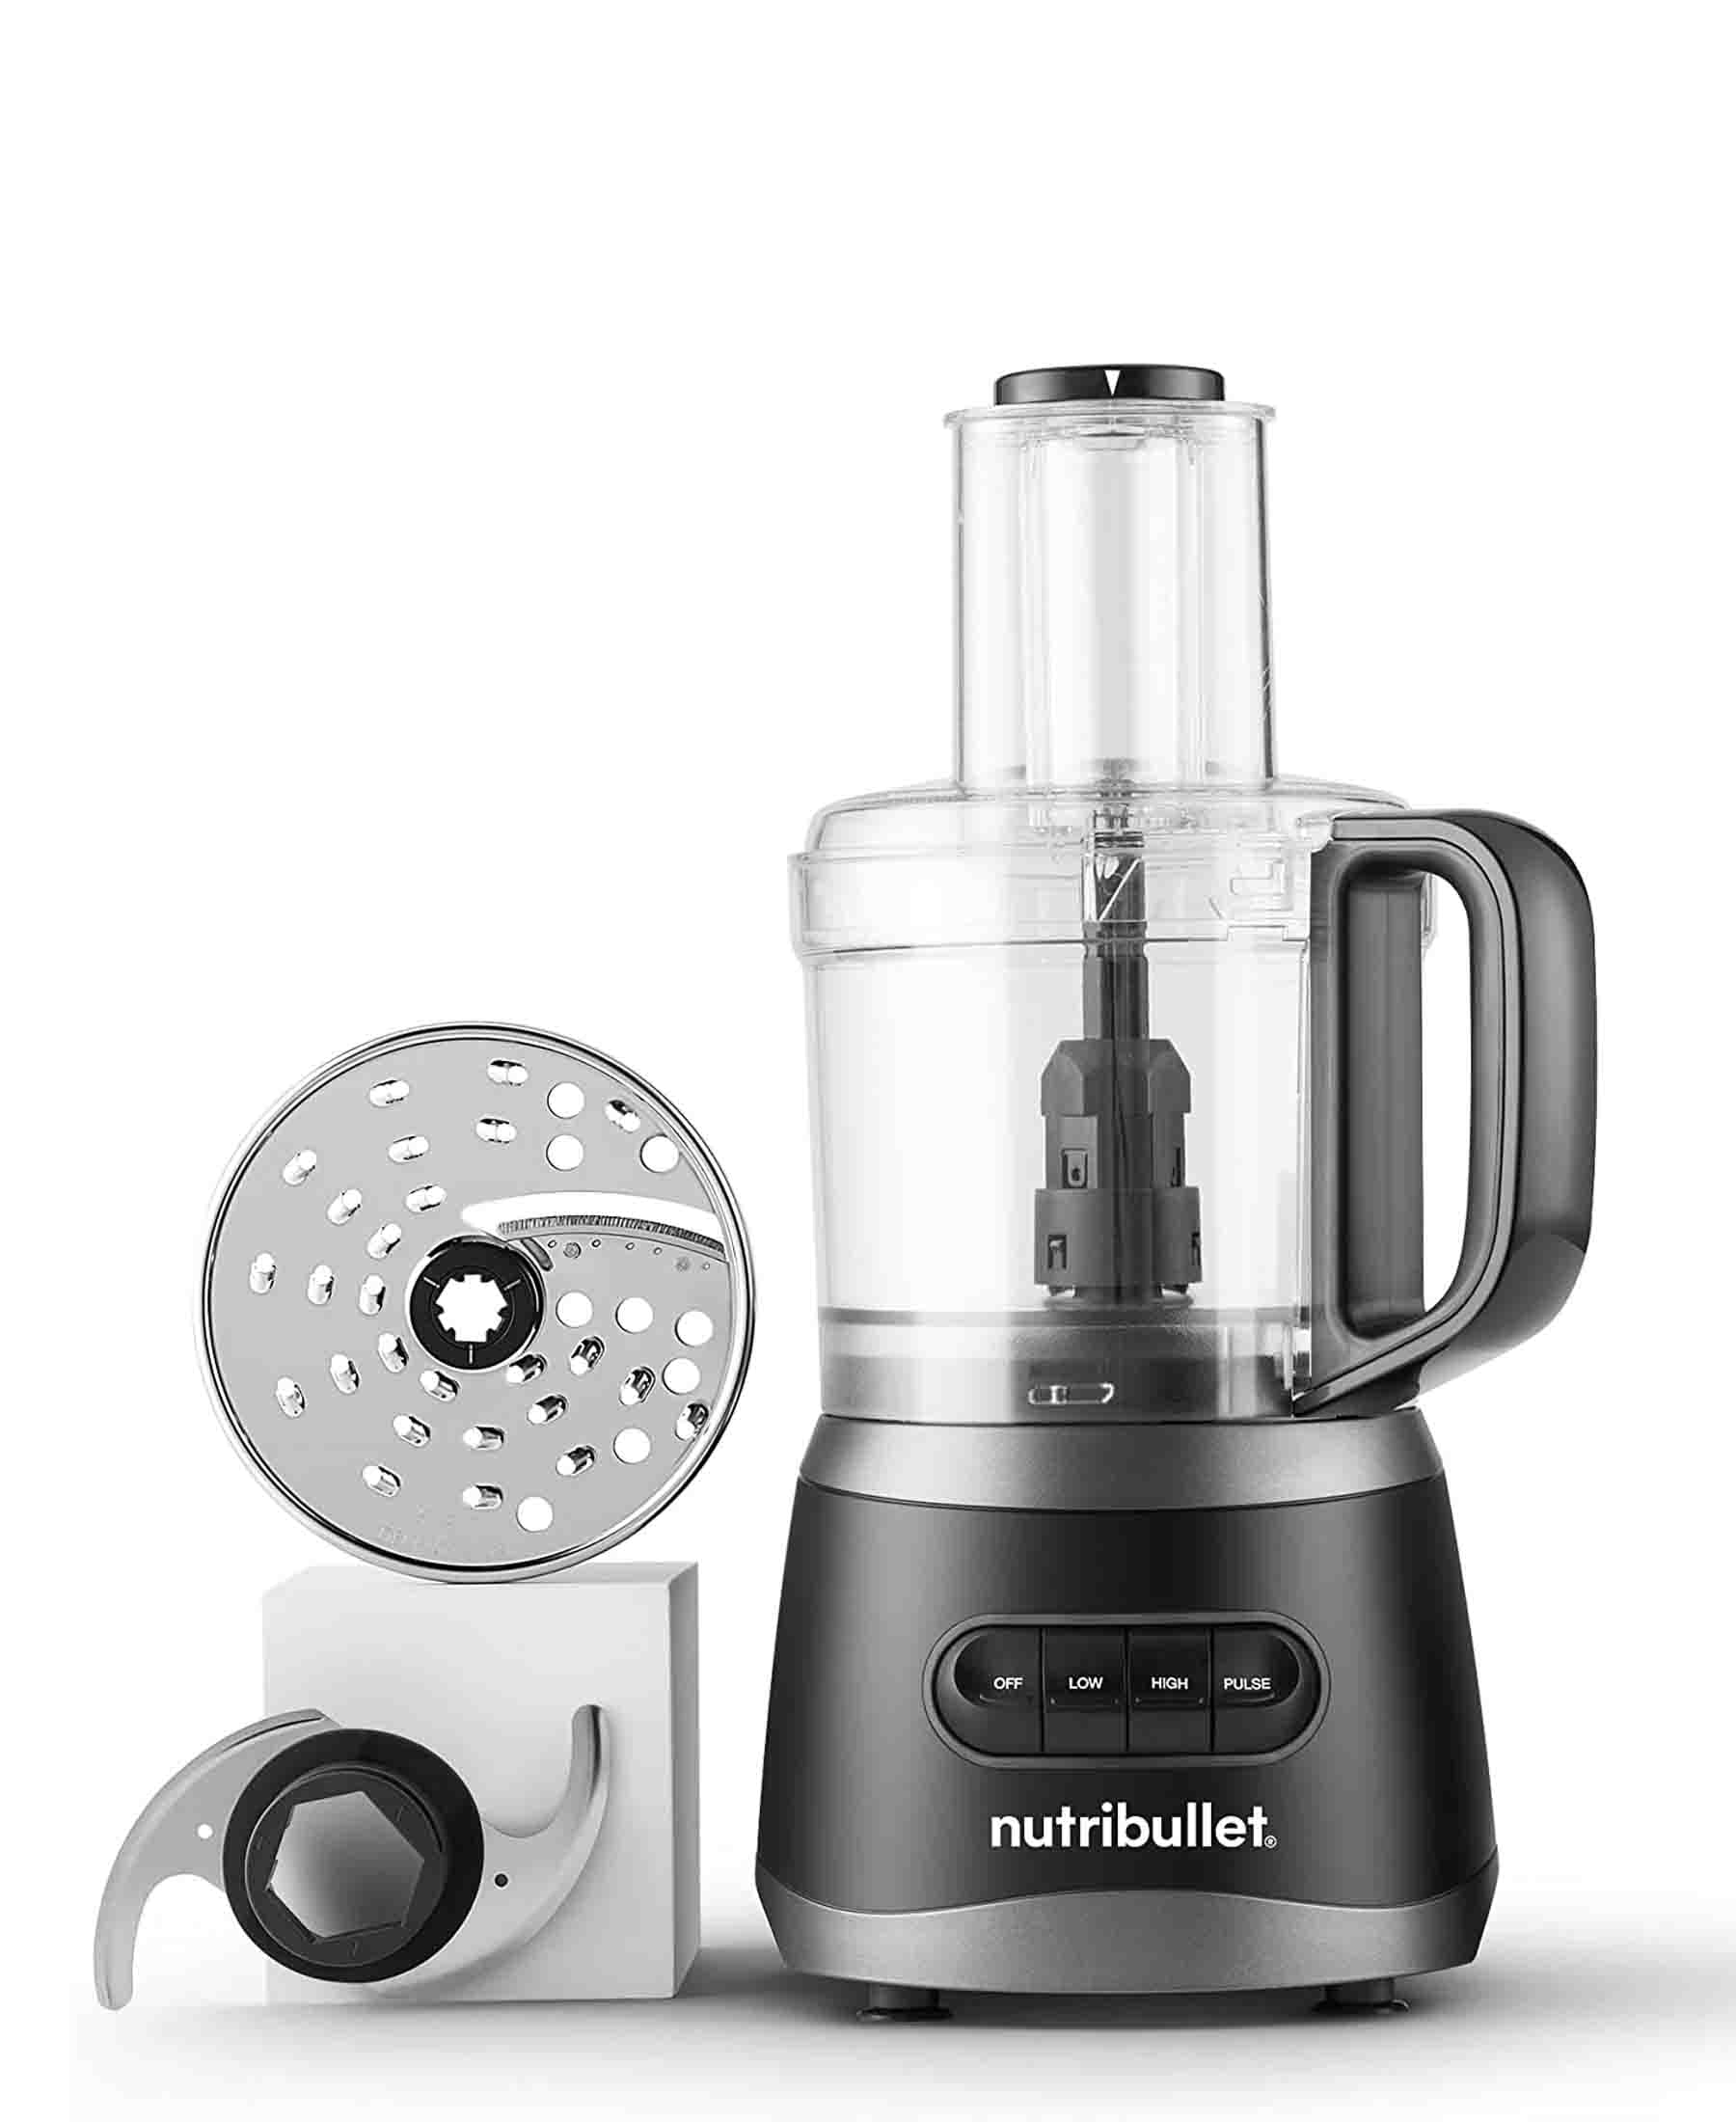 Nutribullet 7-Cup Food Processor - Grey